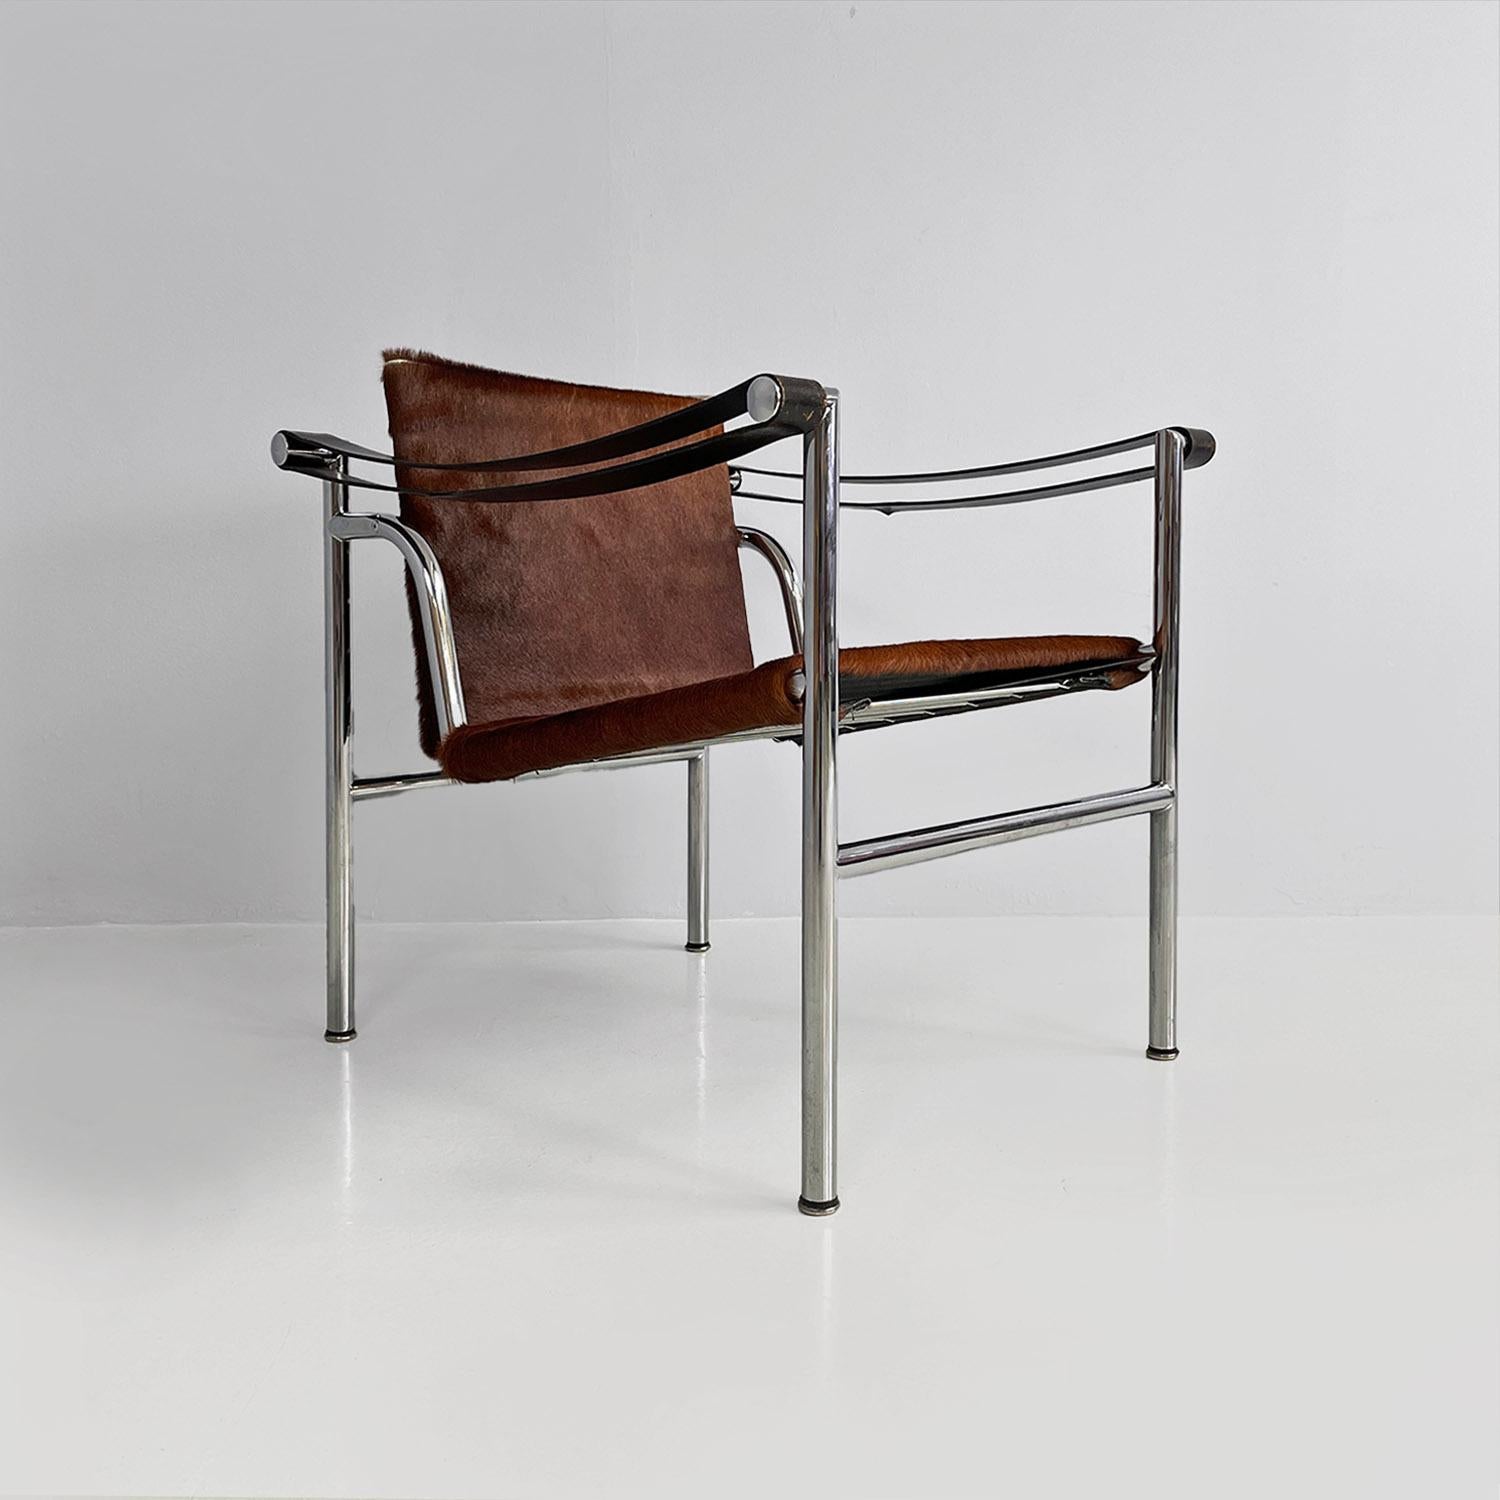 Kleiner Sessel, Modell LC1, mit Gestell aus verchromten Metallstäben, mit kippbarer Rückenlehne und mit braunem Ponyhaar bezogenem Sitz, mit Armlehnen aus zwei durchgehenden Streifen aus schwarzem Leder.
1928 von Le Corbusier, Pierre Jeanneret und